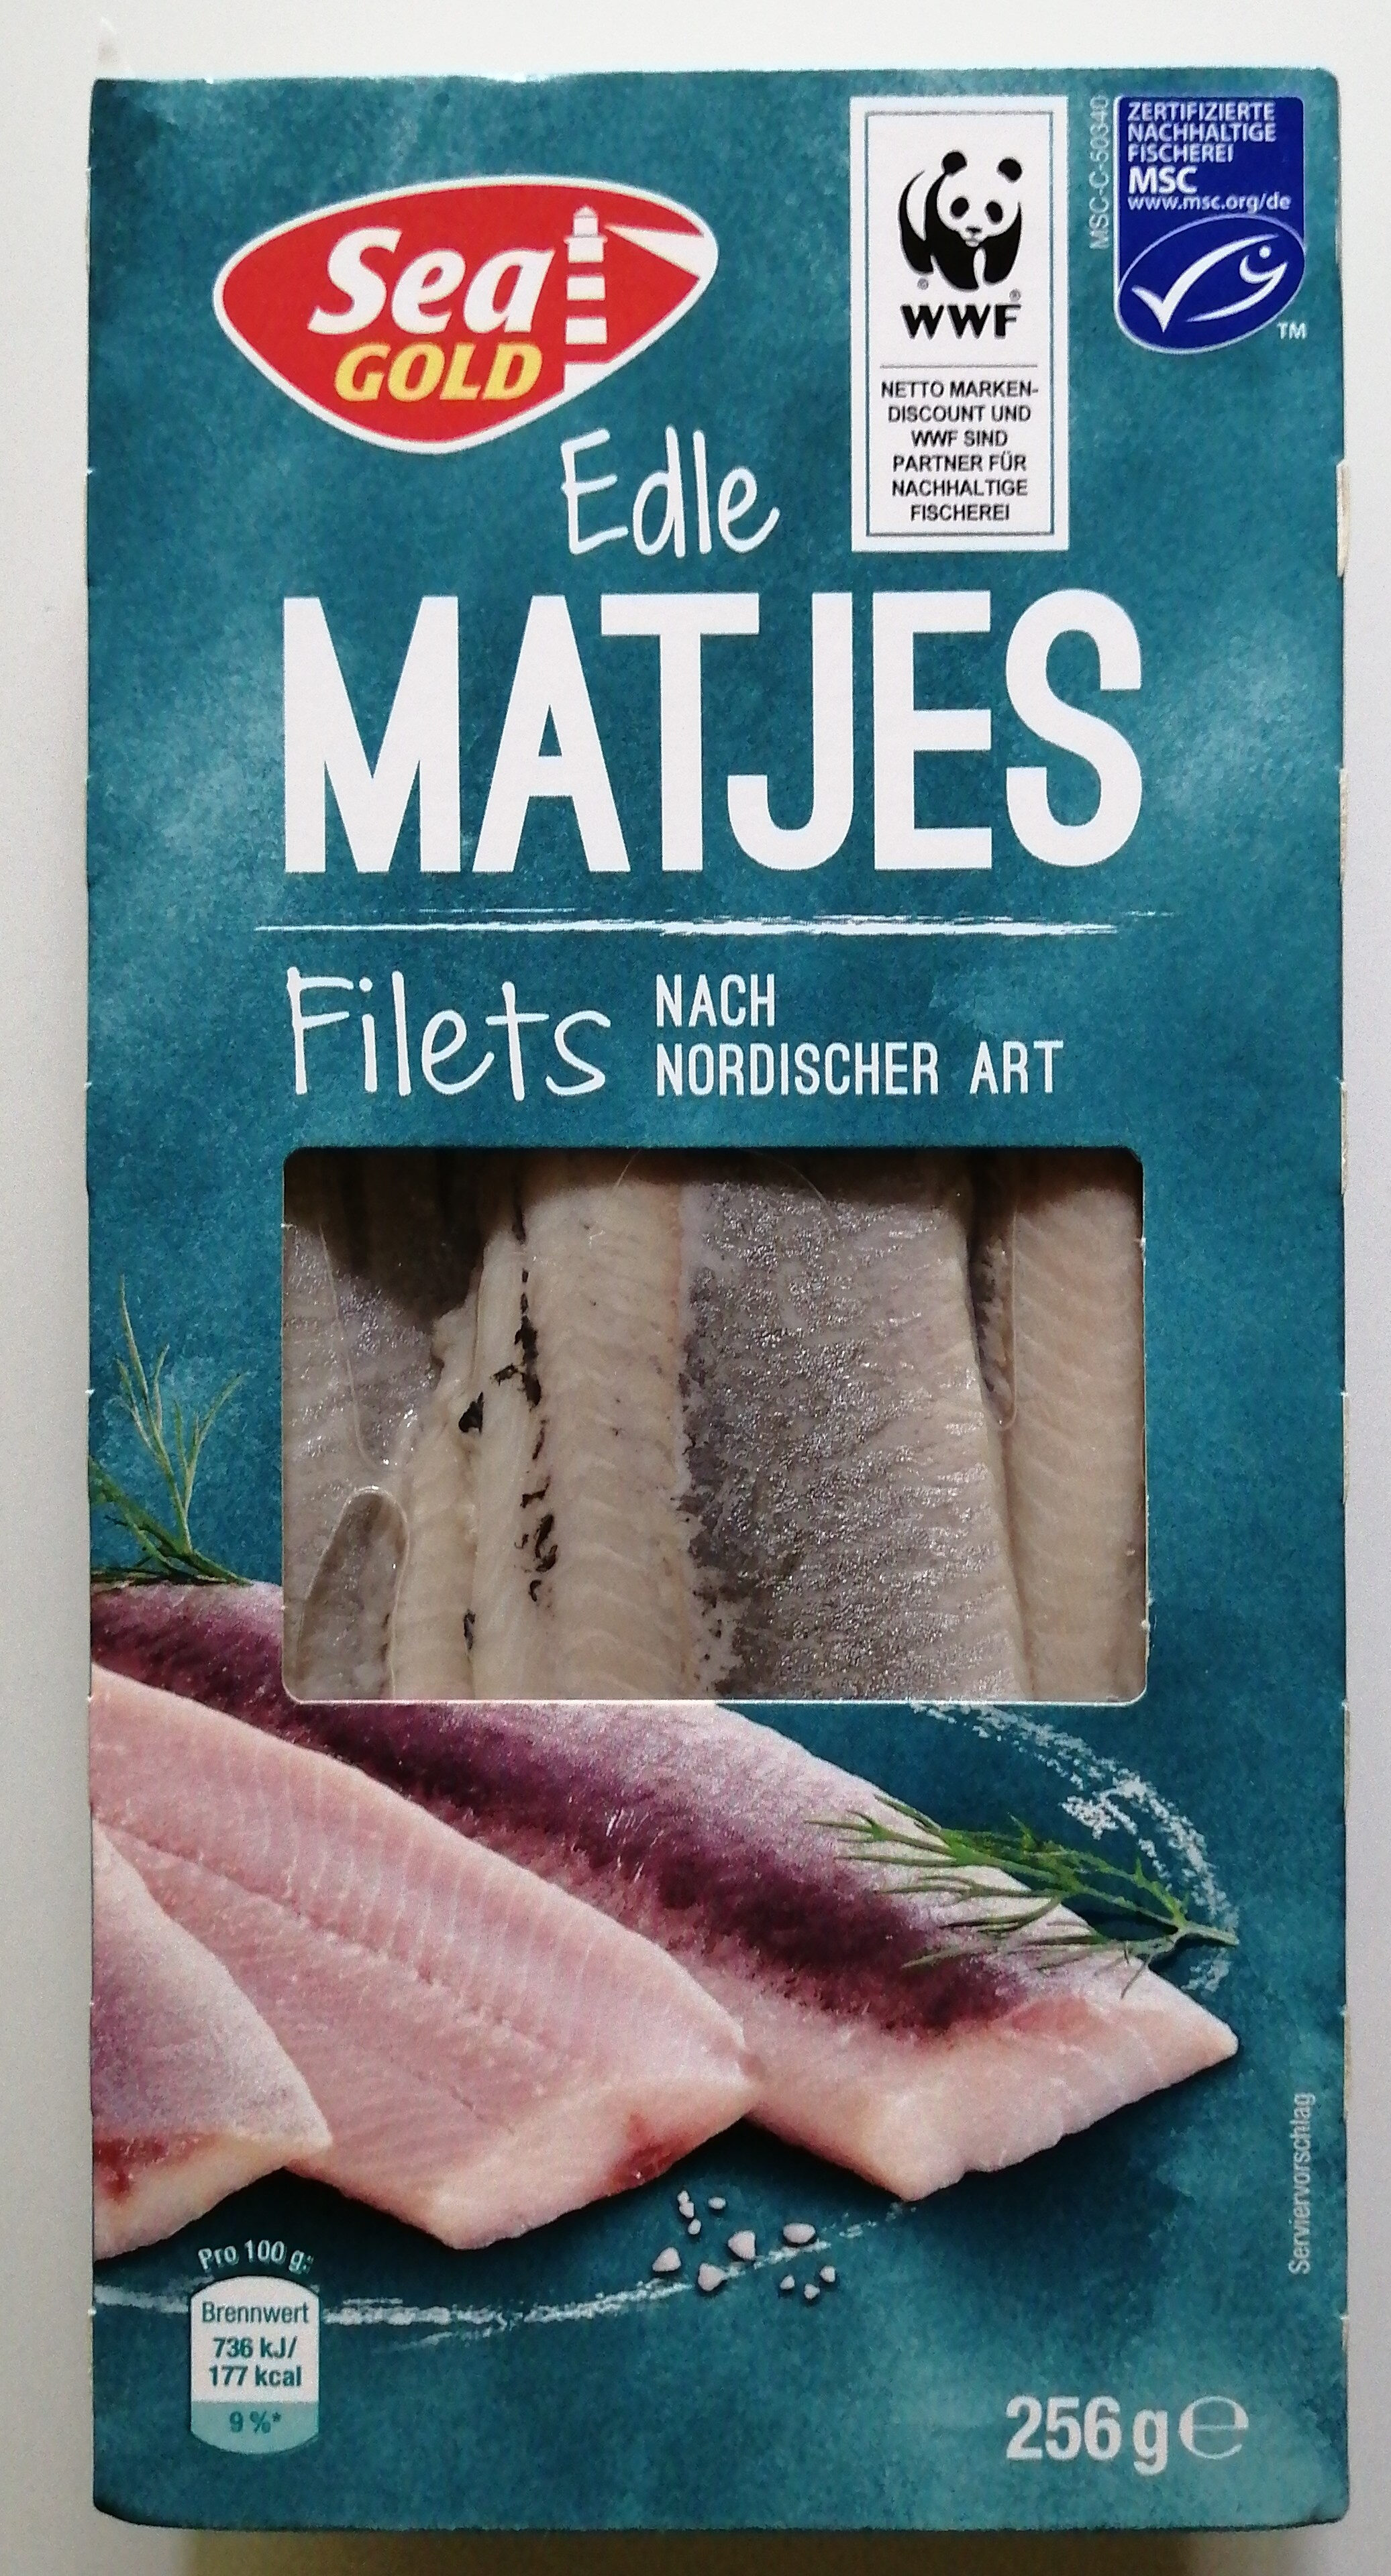 Edle MATJES Filets - Product - de